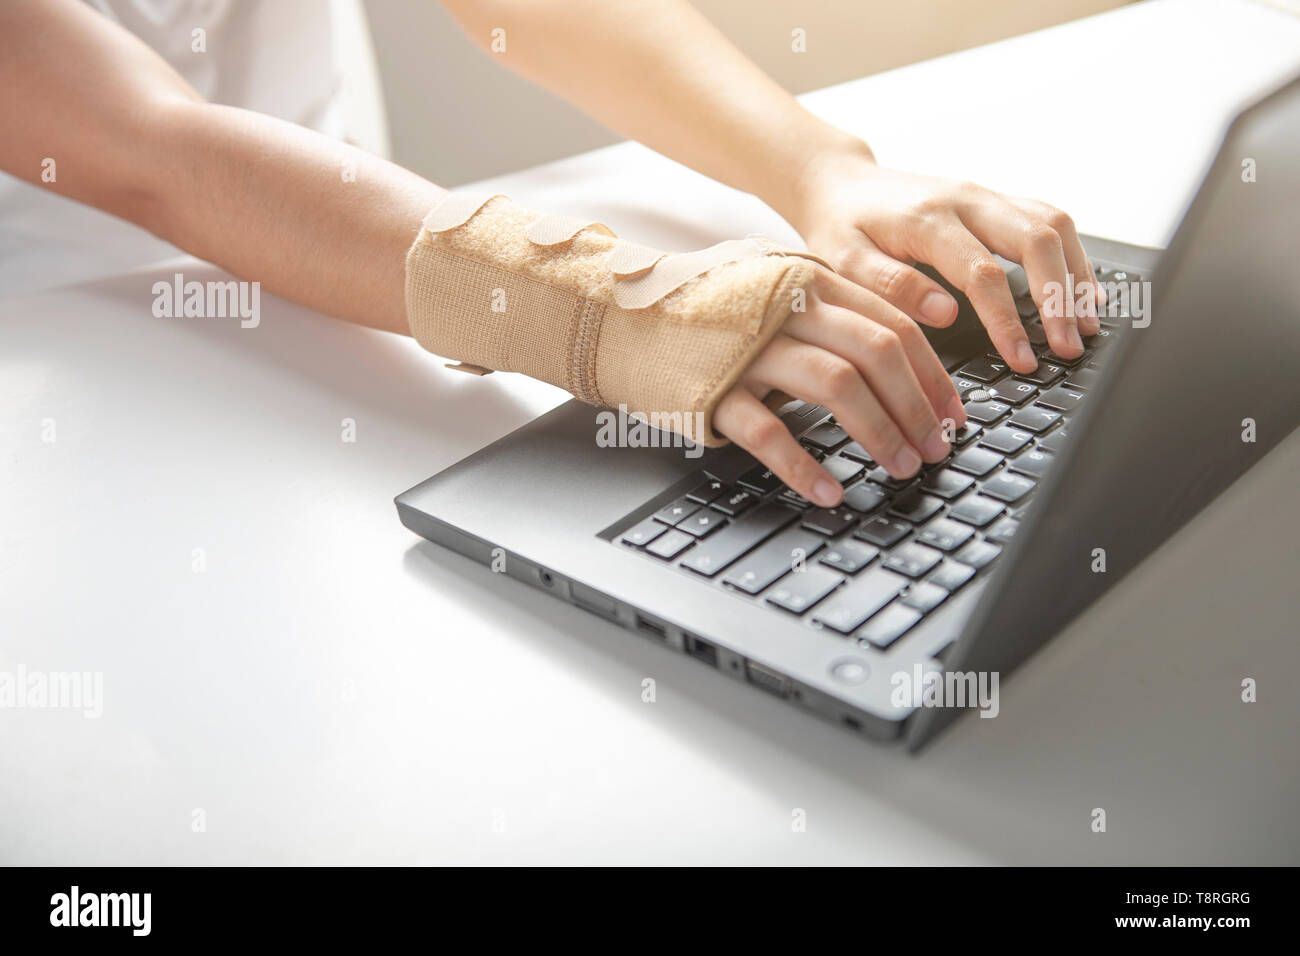 La douleur au poignet à l'aide de l'ordinateur de bureau, par contre le syndrome de la douleur ou une blessure, utiliser femme bandage élastique à traiter. Banque D'Images